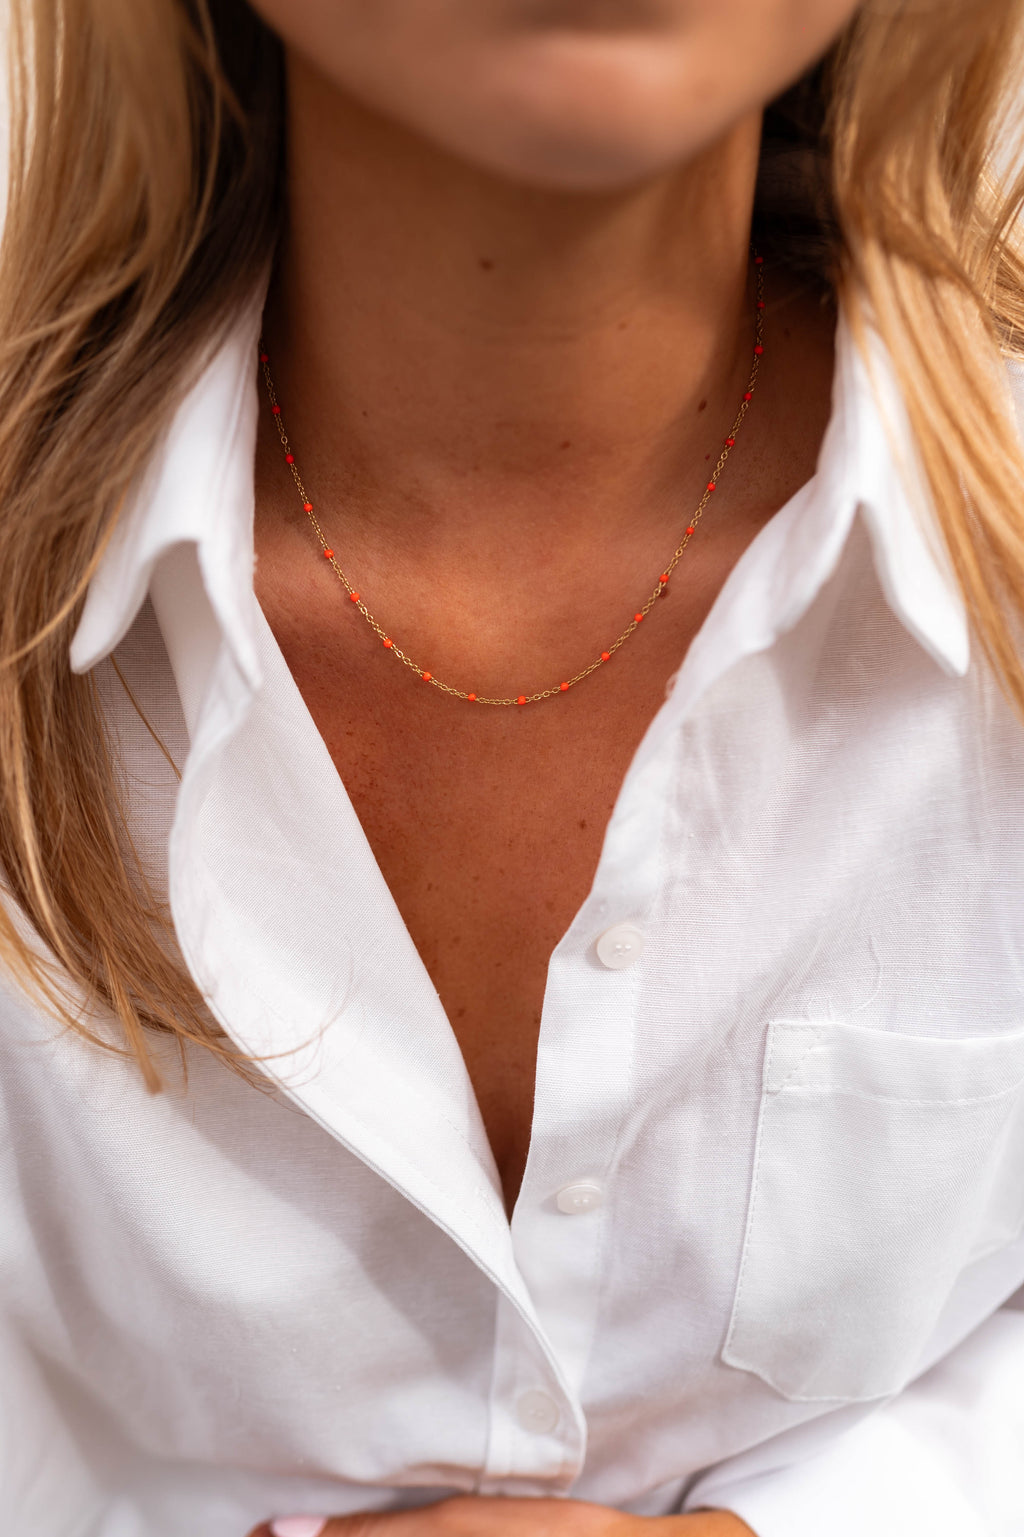 Mary necklace - orange